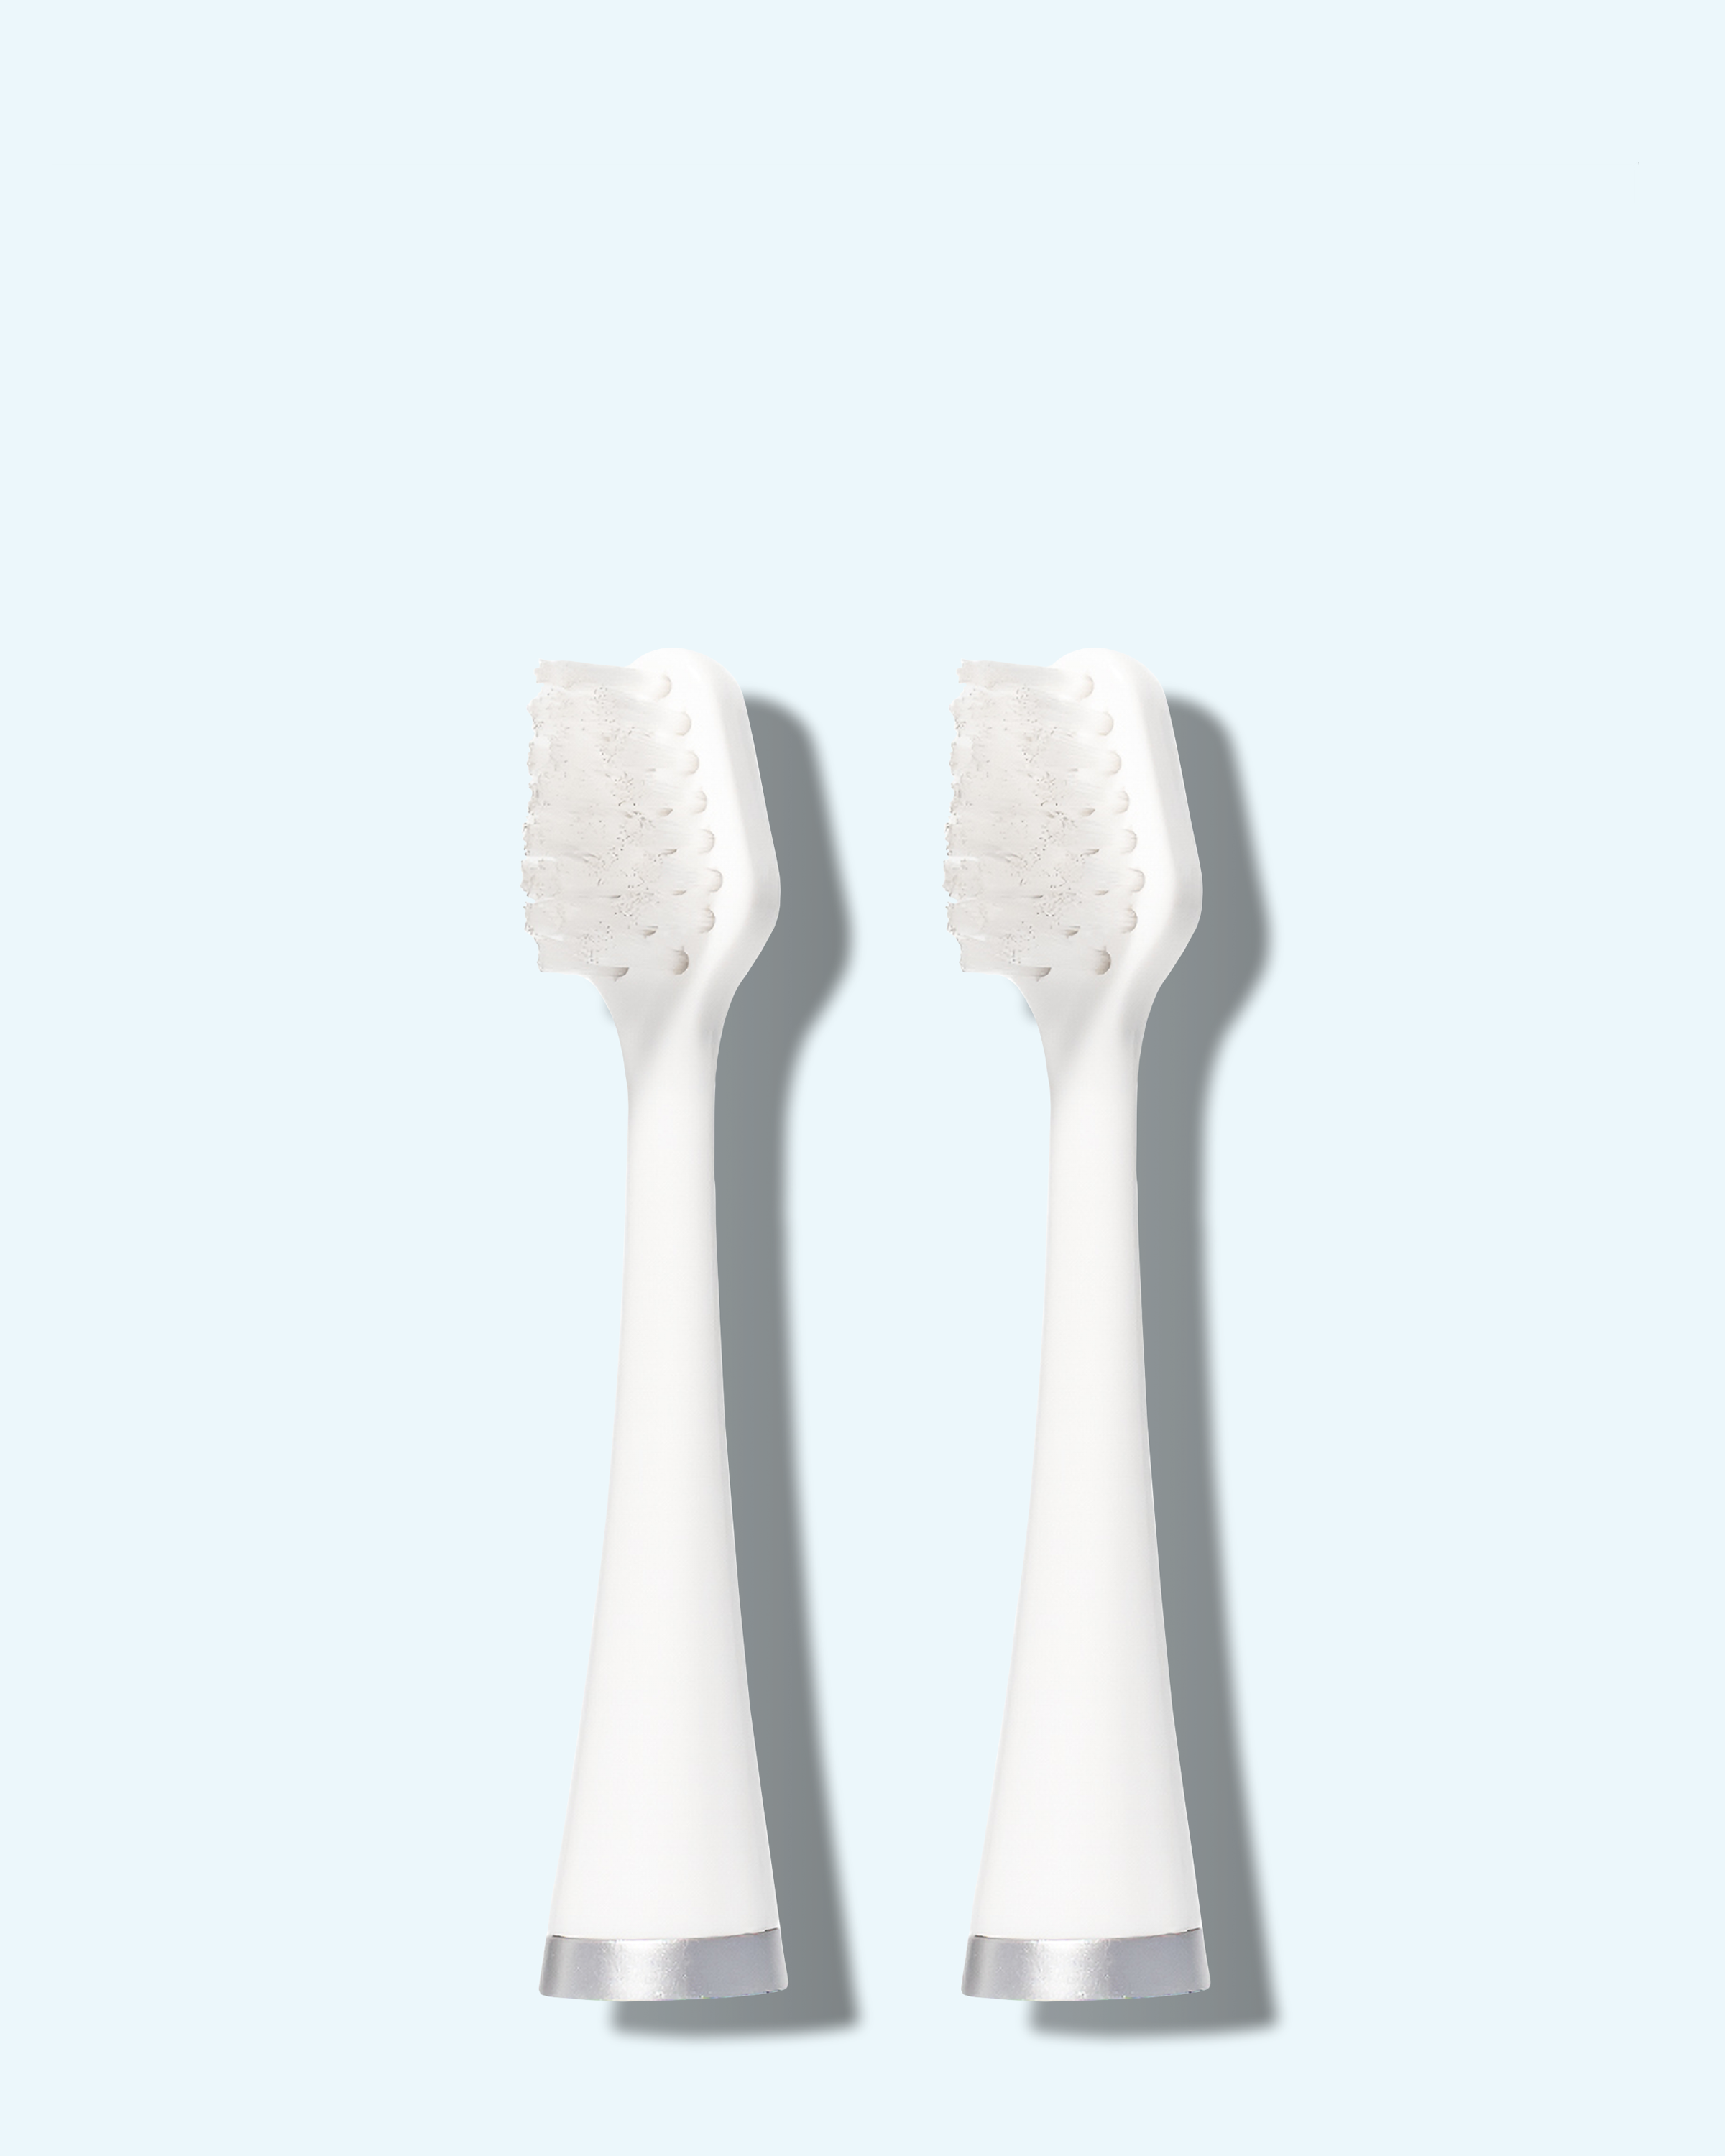 sonic toothbrush brush heads